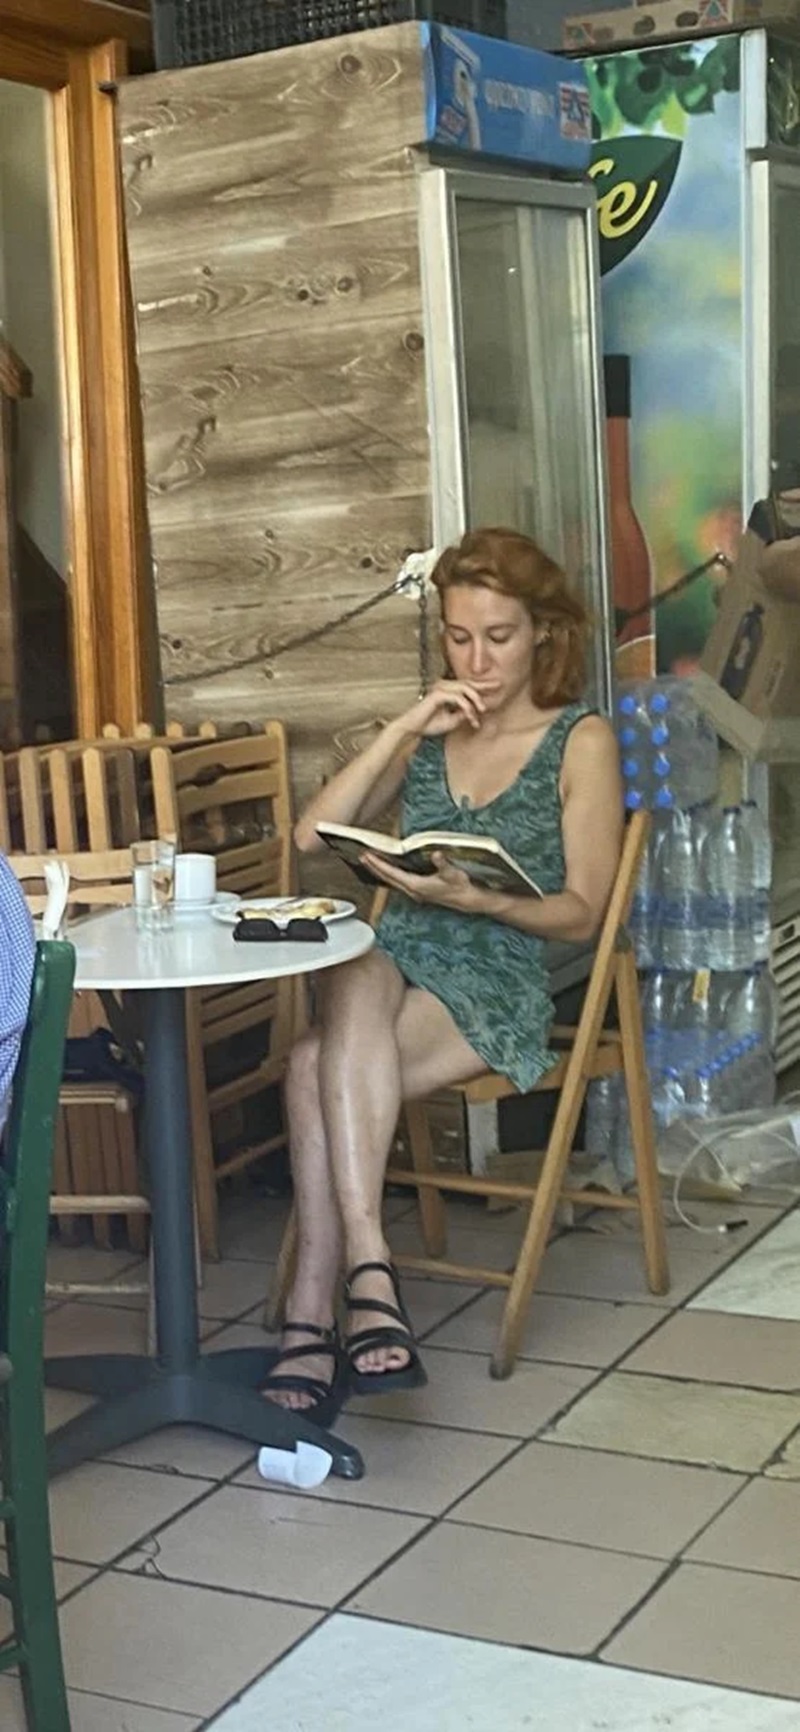 Στο Ηράκλειο βρέθηκε το Πάσχα, η Λόρα Μπράουν (Μαρθίλια Σβάρνα) ηθοποιός της τηλεοπτικής σειράς Παραλία.